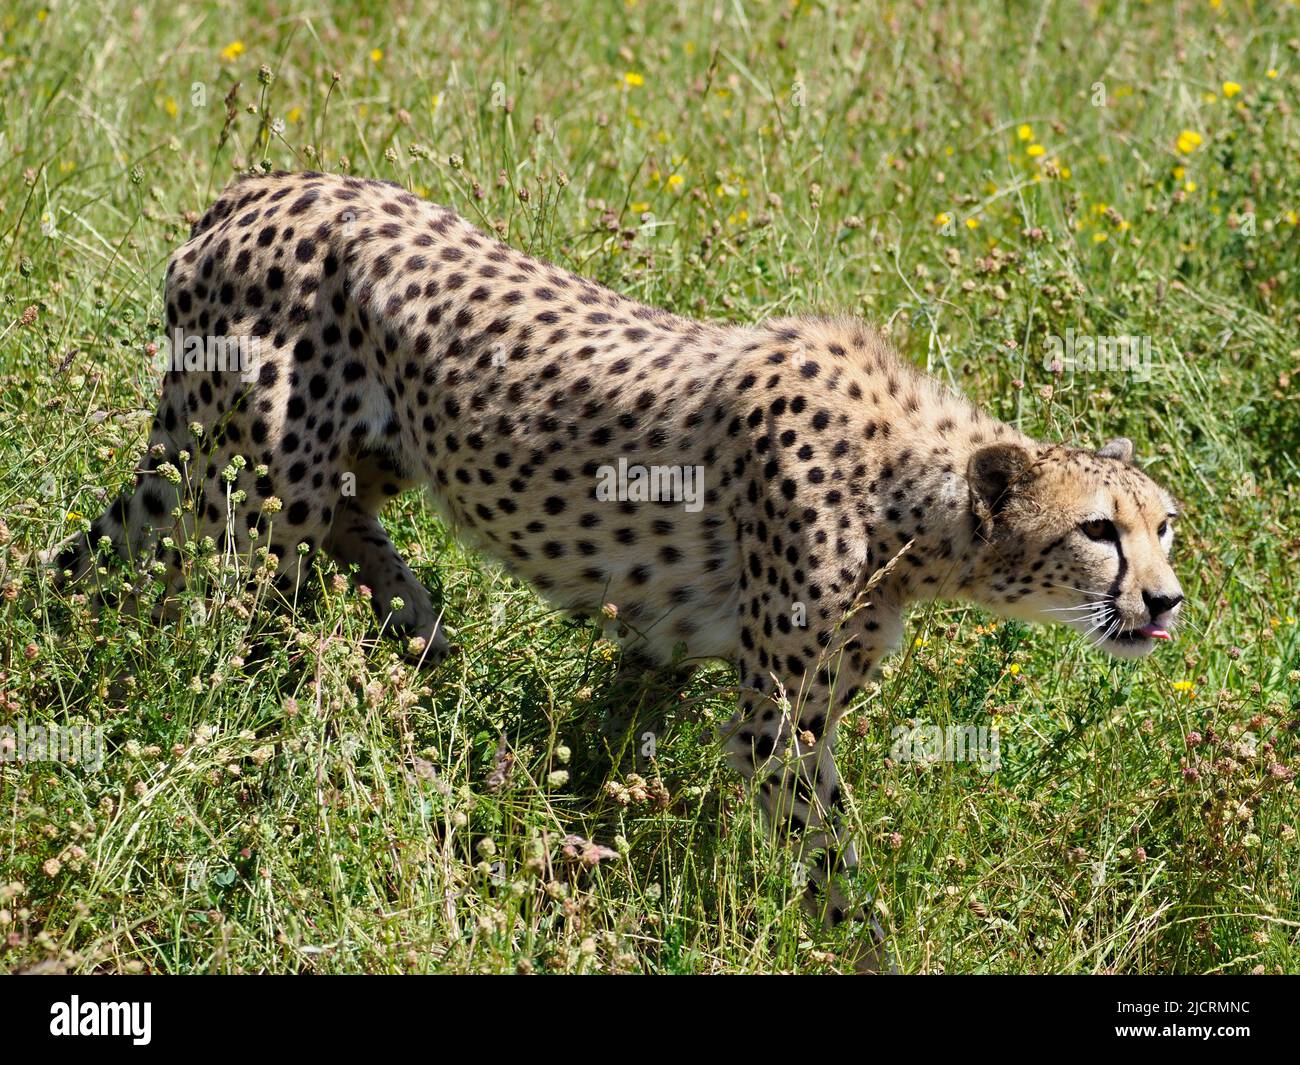 Primer plano Cheetah africano (Acinonyx jubatus) caminando entre pastos altos y vistos desde el perfil Foto de stock